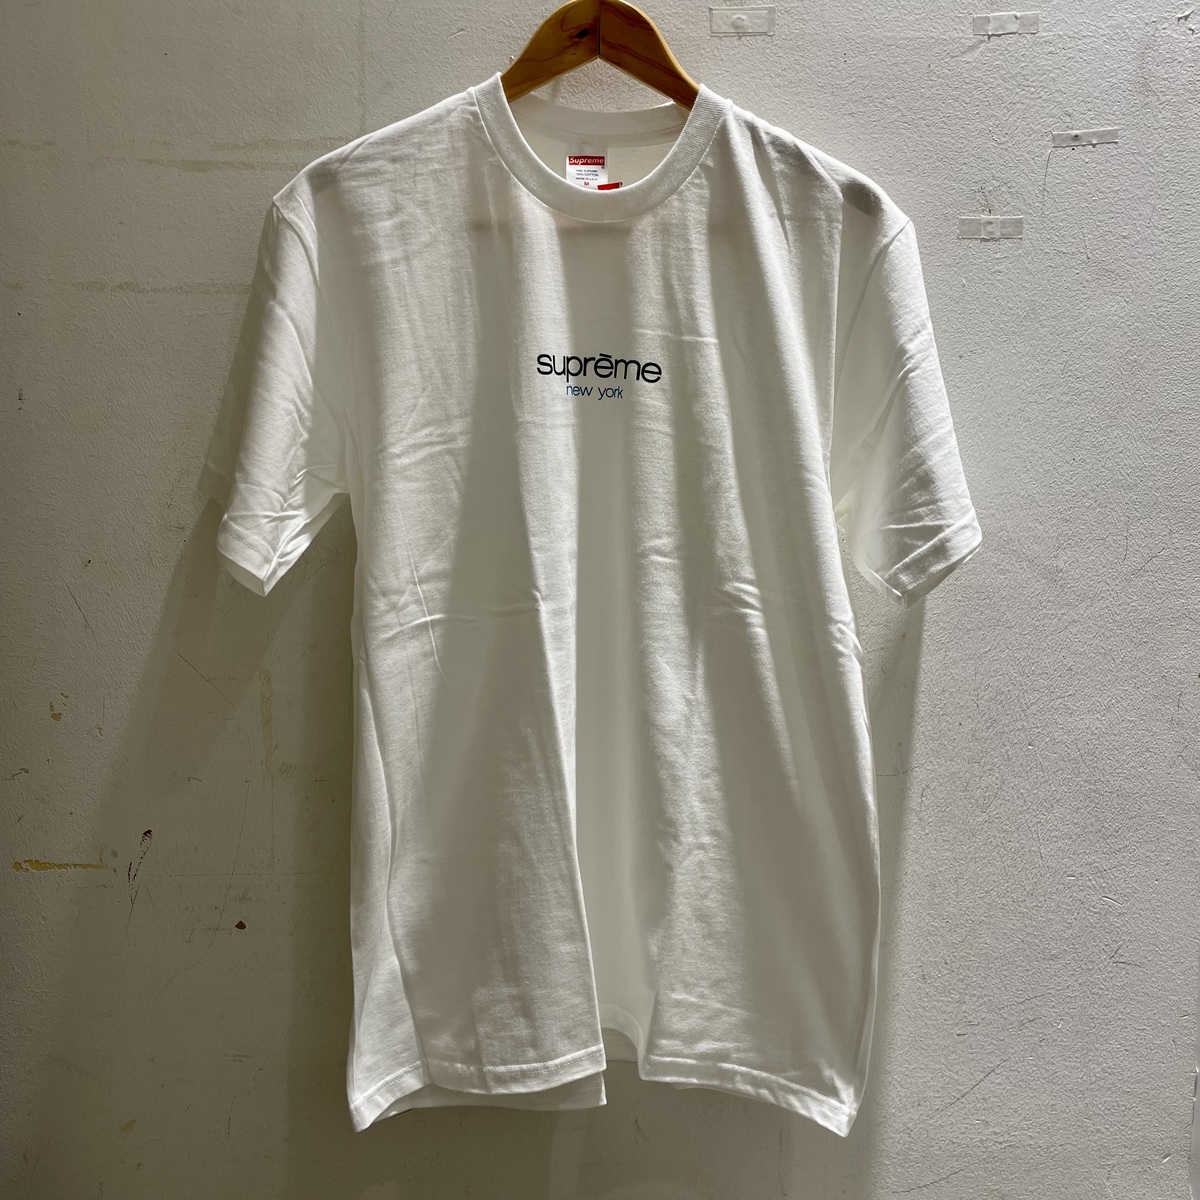 シュプリームのホワイト 2022年春夏物 クラシックロゴ Tシャツの買取実績です。